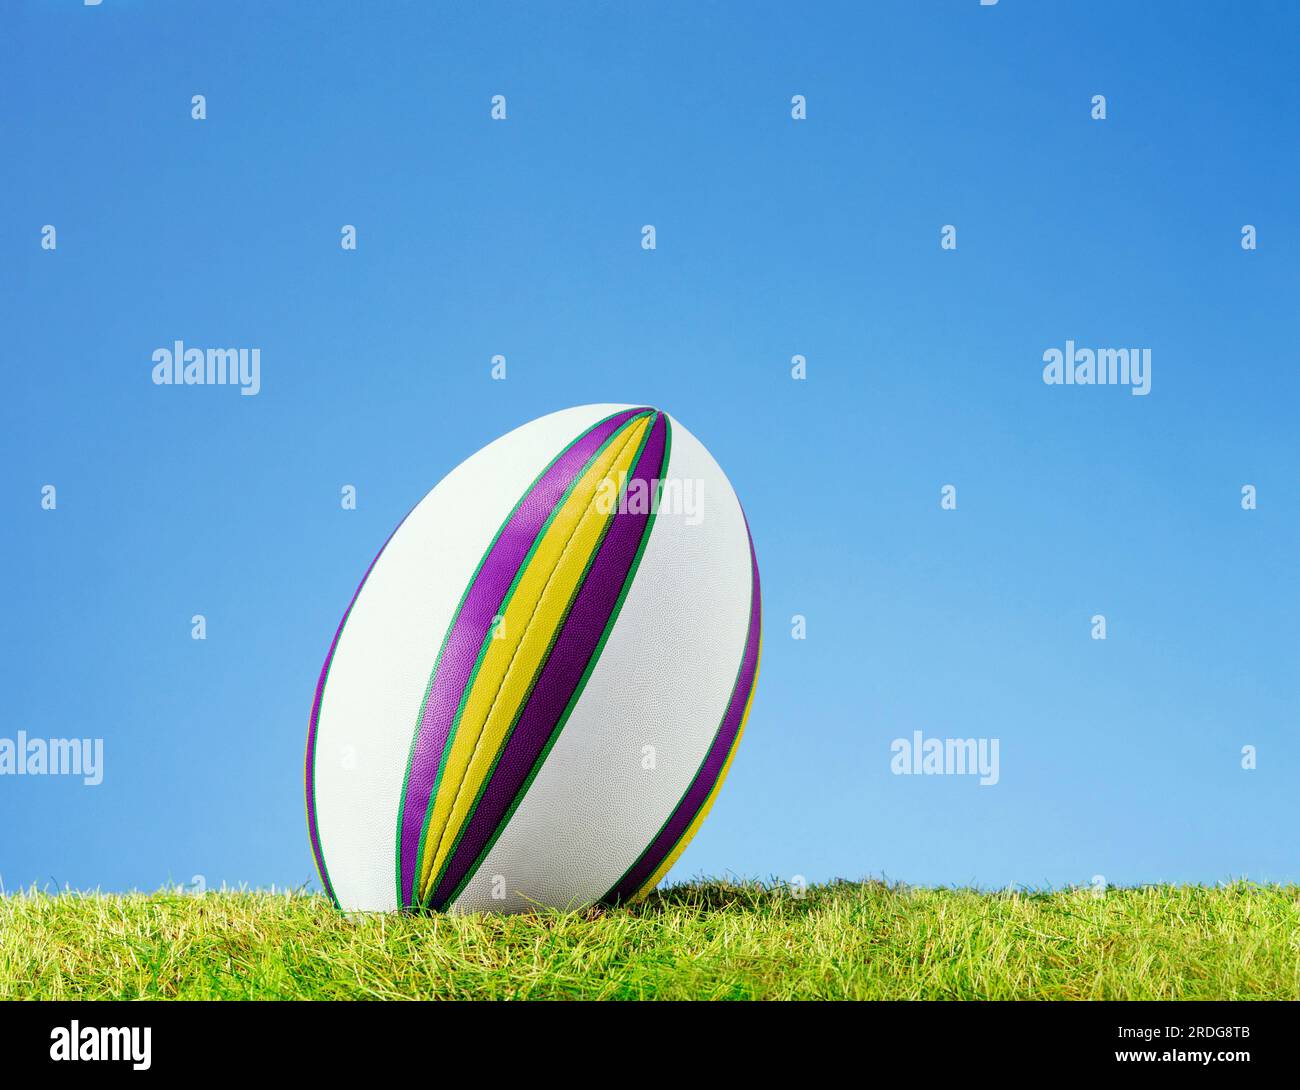 ballon de rugby sur grass01 03 03.tif Banque D'Images